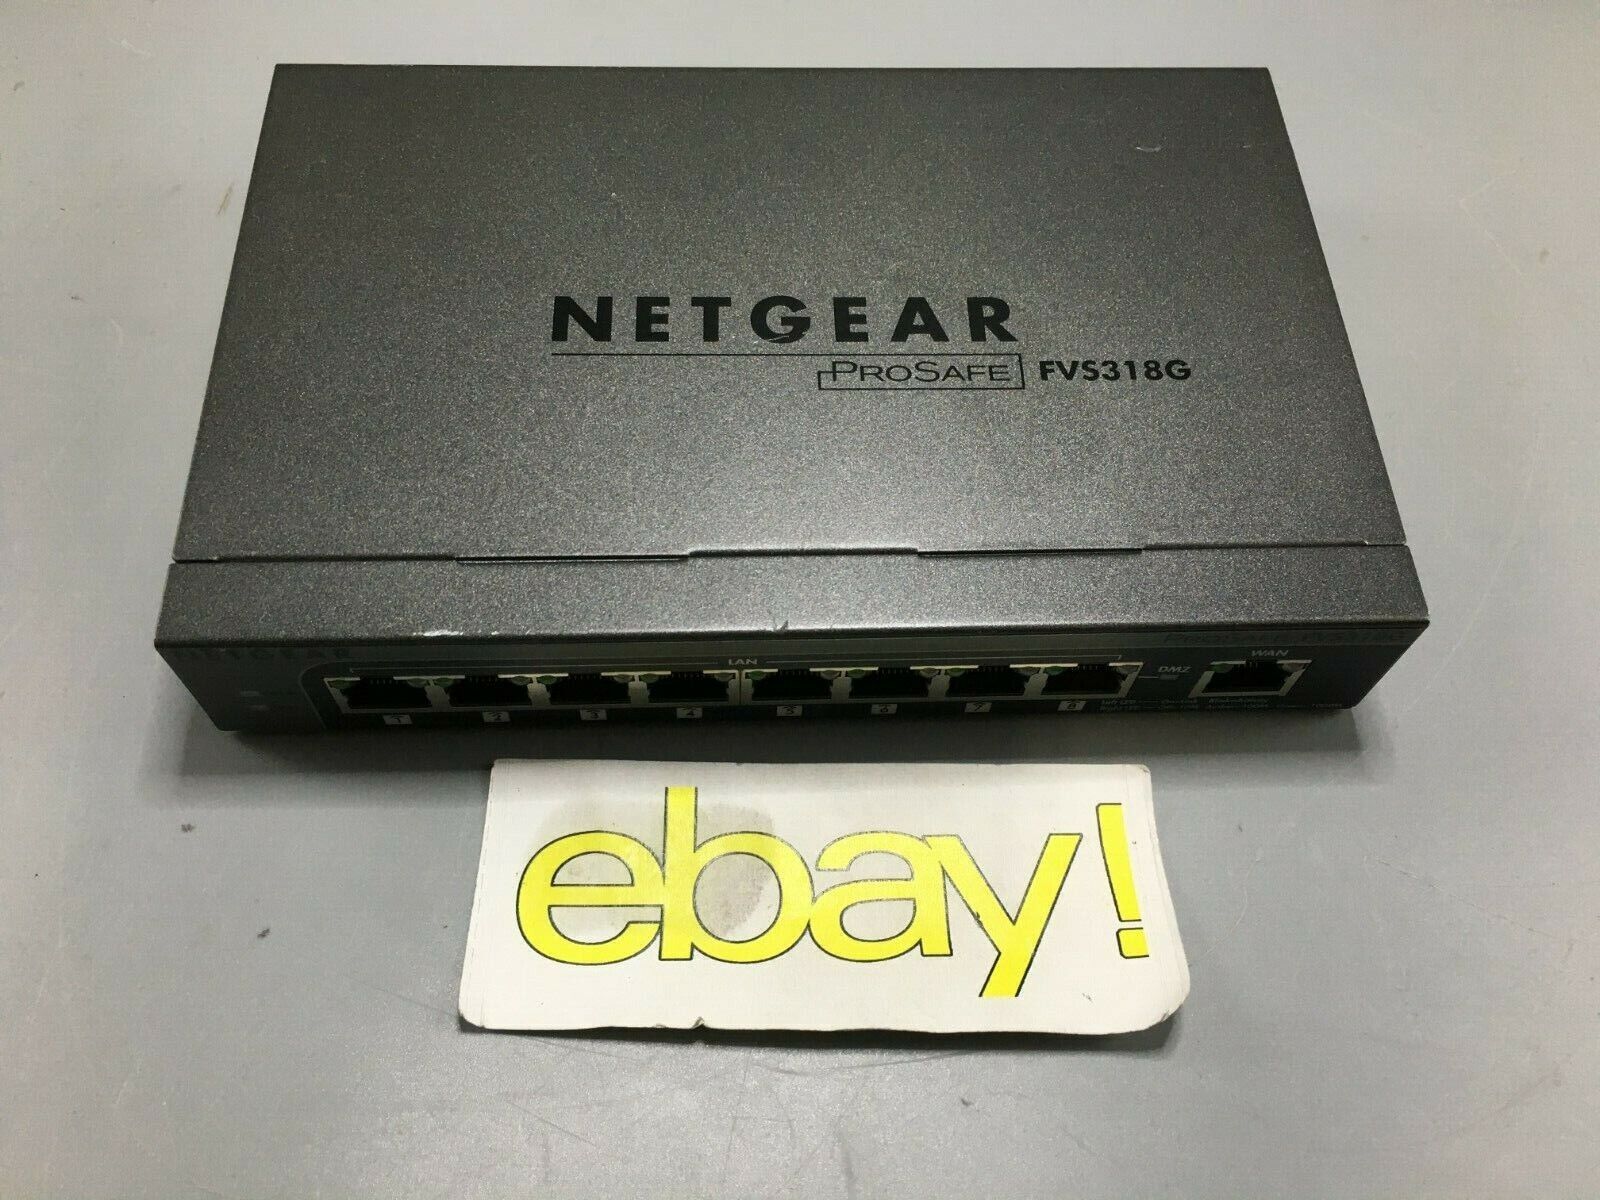 NETGEAR FVS318G ProSafe VPN Firewall 8 Port 